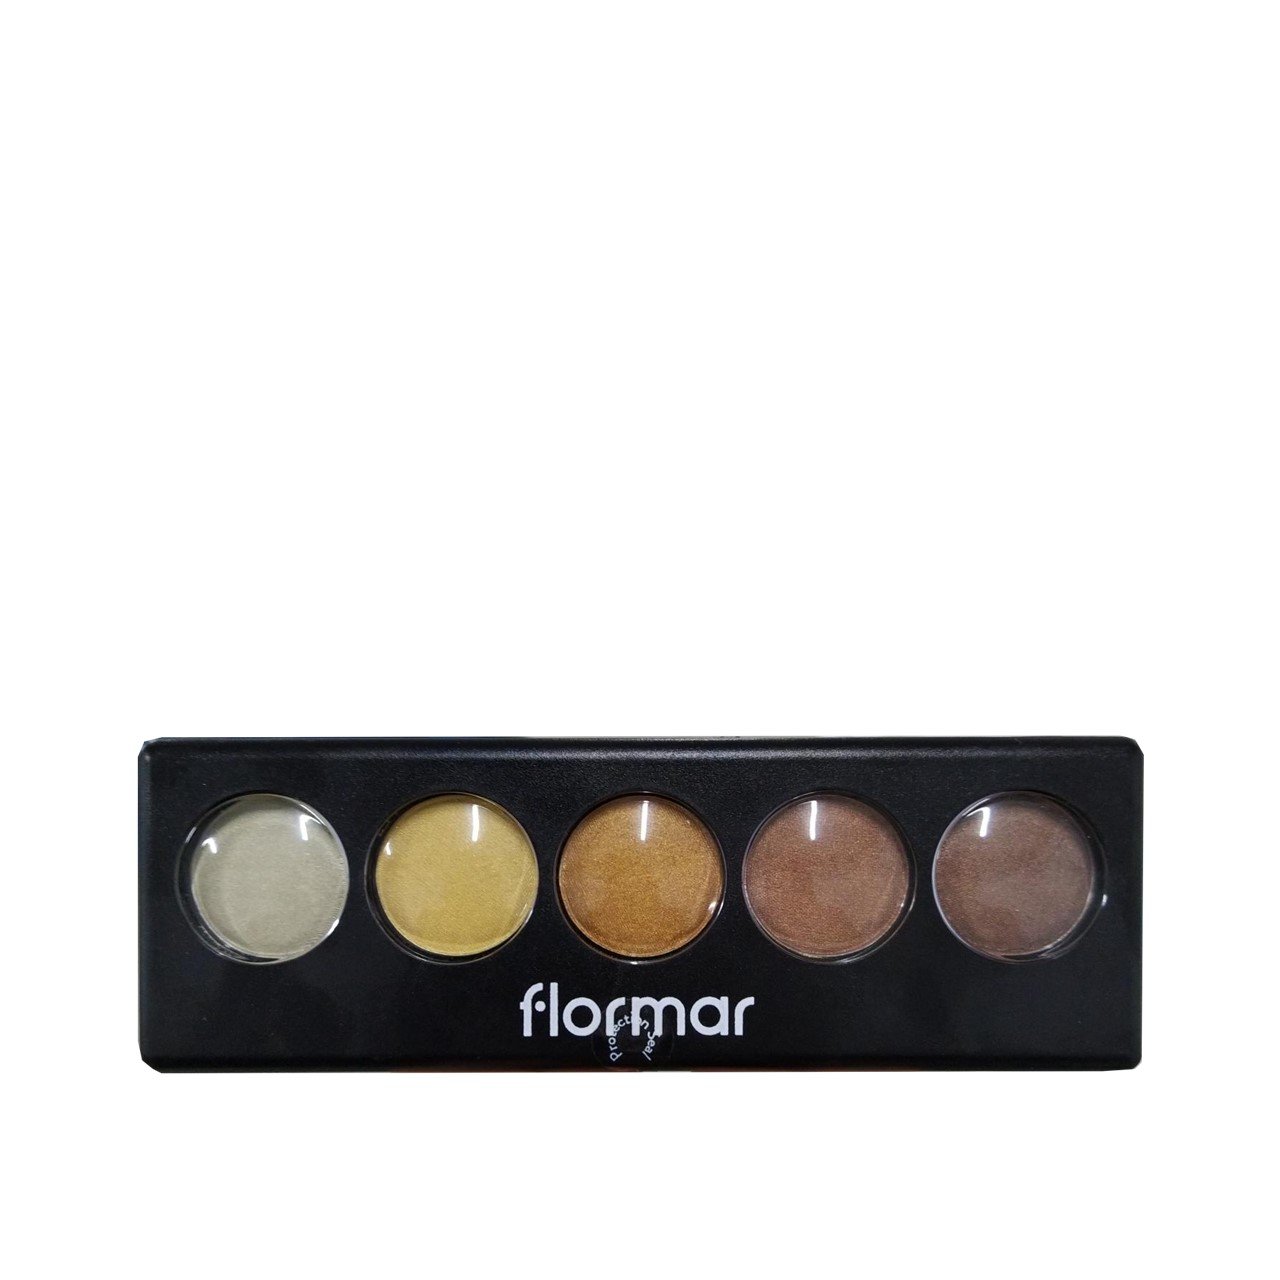 Flormar Color Palette Eyeshadow 04 Golden Caramel 9g